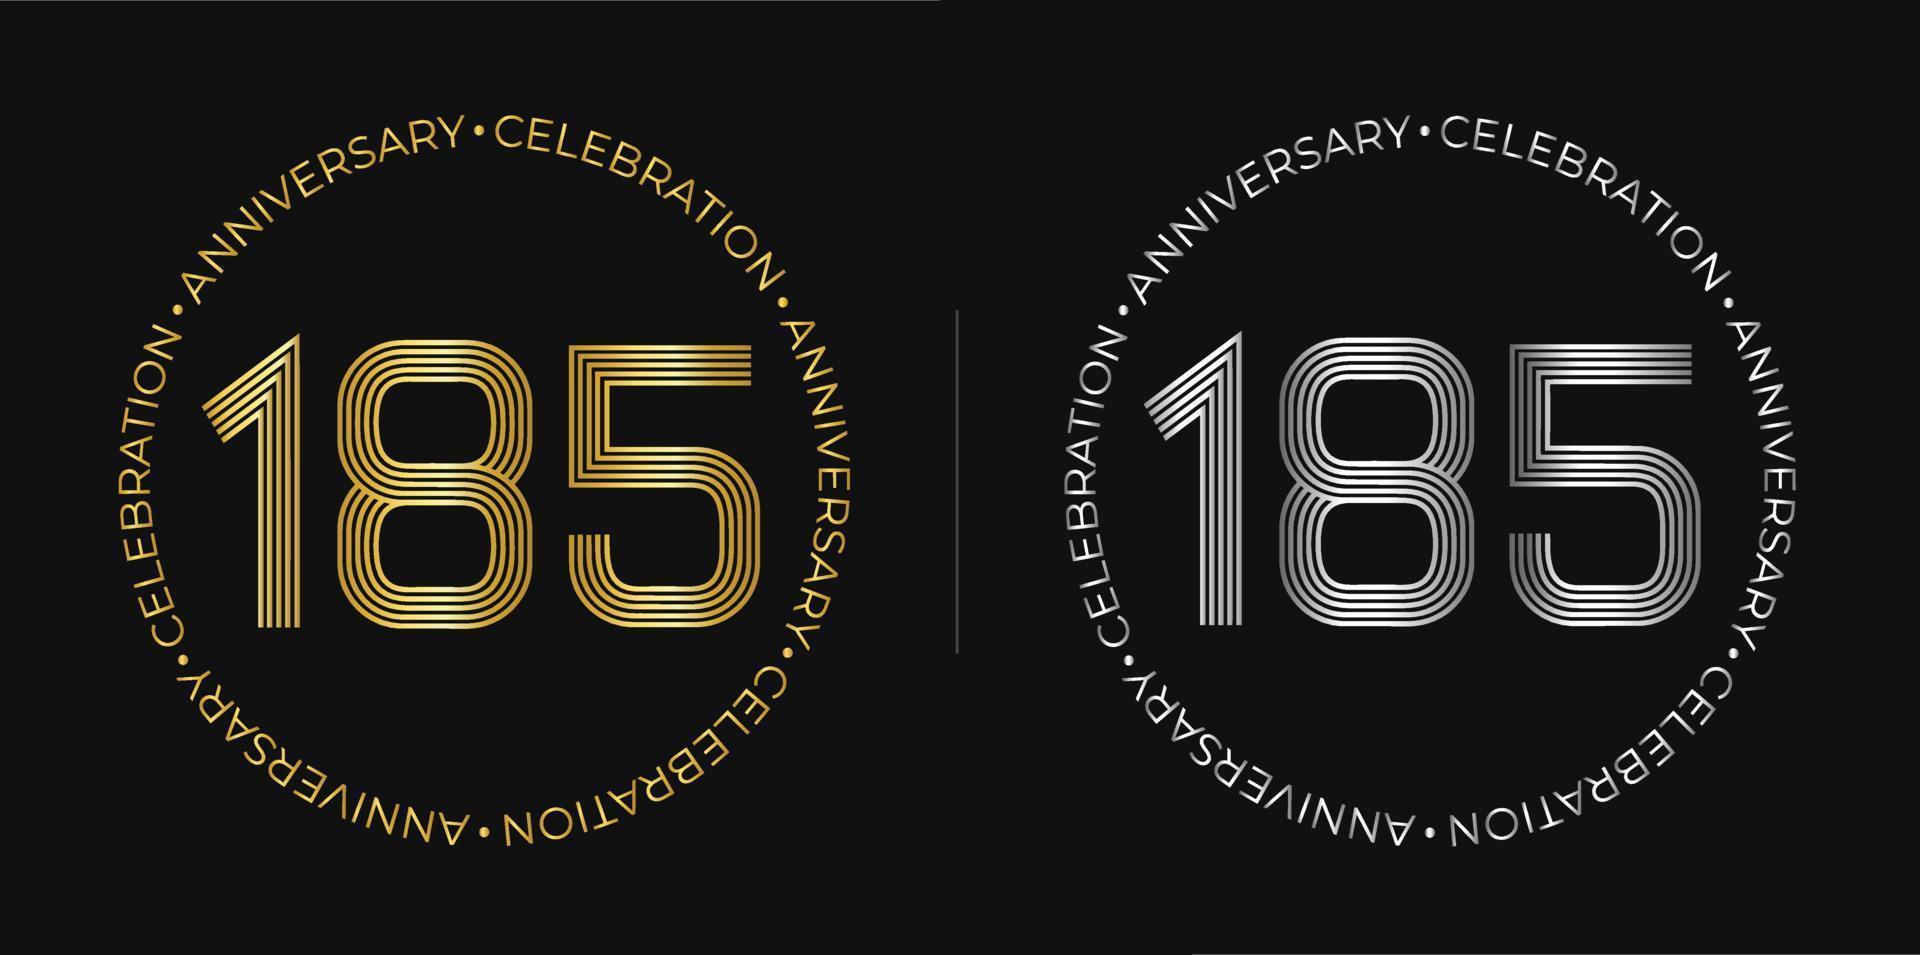 185 cumpleaños. Banner de celebración de aniversario de ciento ochenta y cinco años en colores dorado y plateado. logo circular con diseño de números originales en líneas elegantes. vector